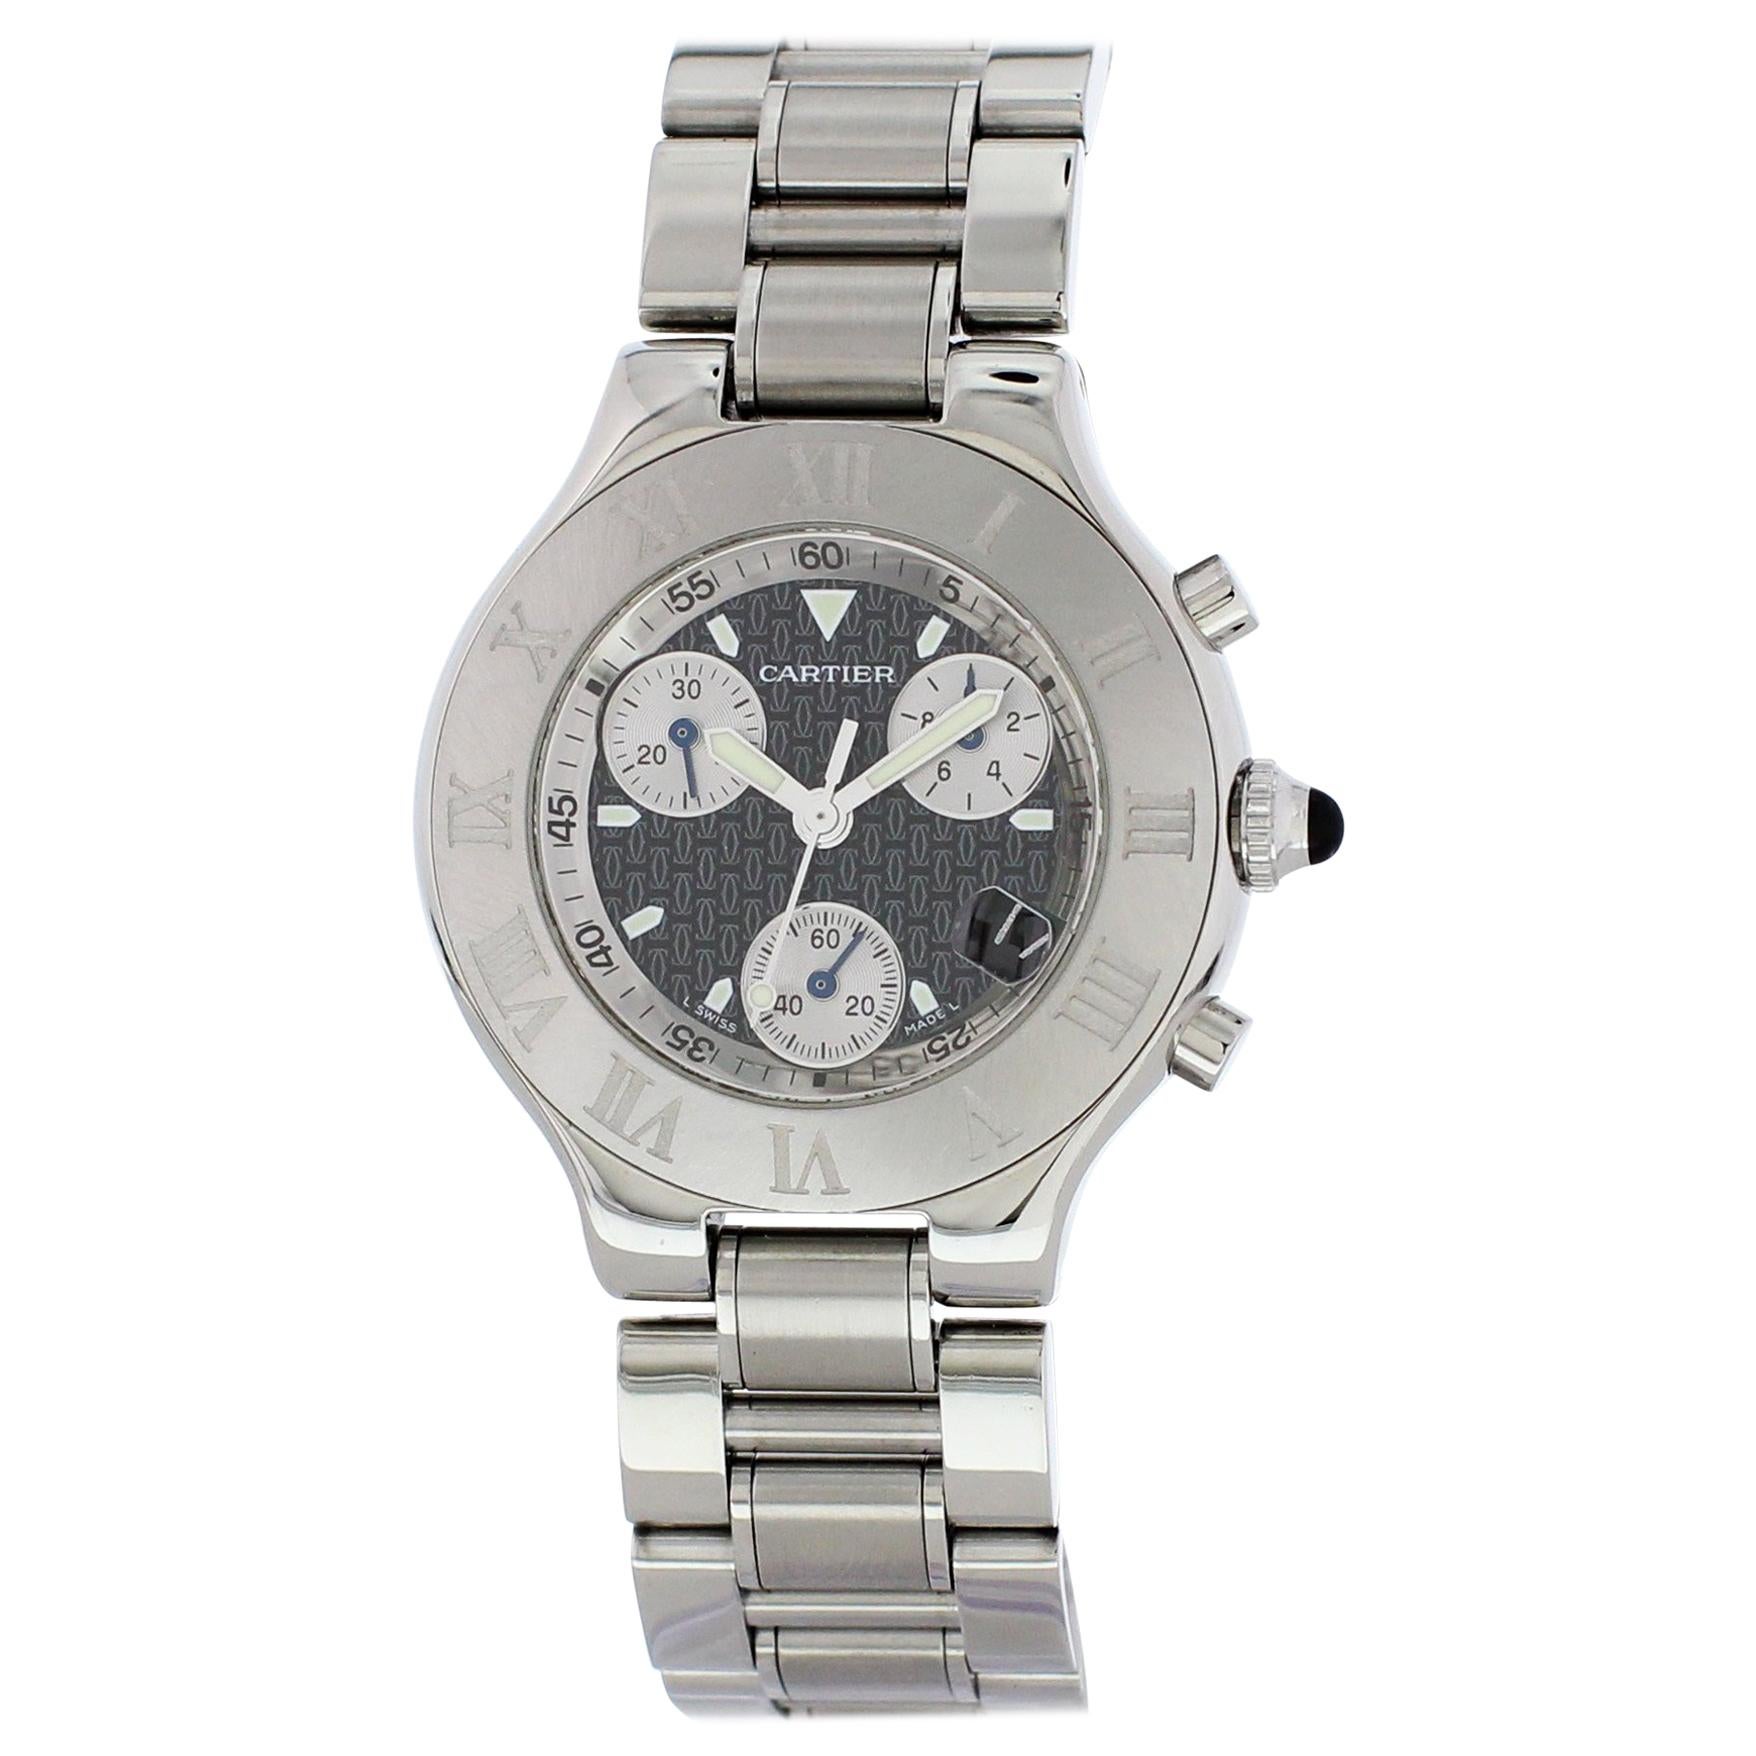 Cartier Chronoscaph 21 2424 Men's Watch For Sale